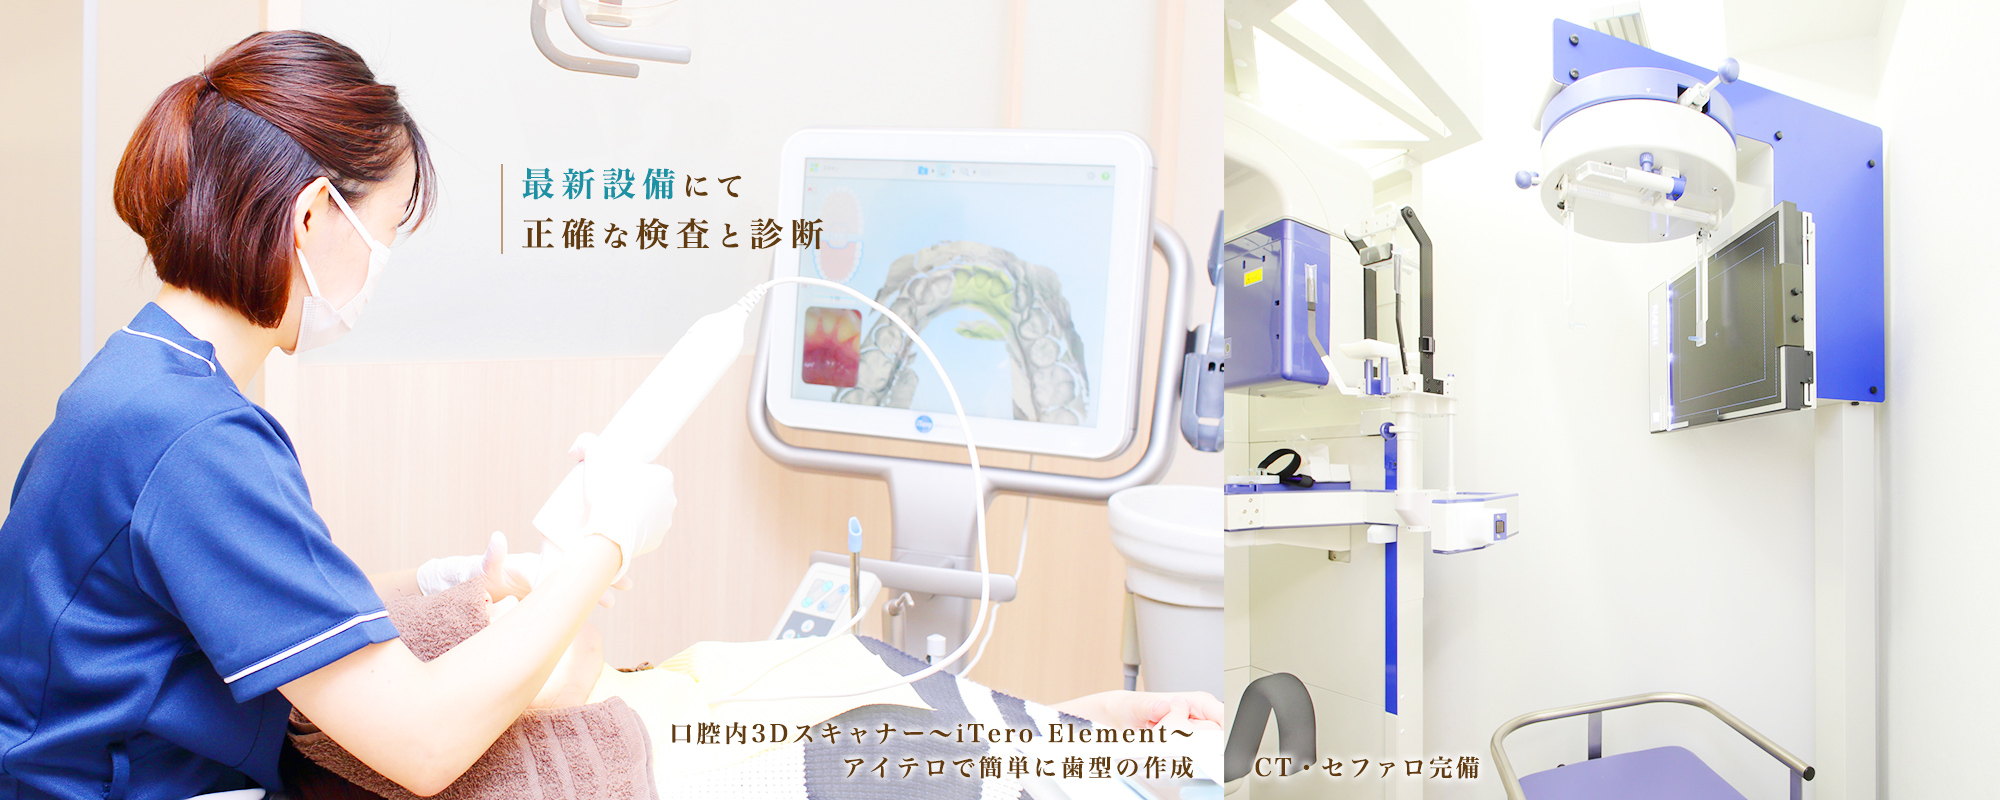 最新設備にて 正確な検査と診断 口腔内3Dスキャナー～iTero Element～ アイテロで簡単に歯型の作成 CT・セファロ完備